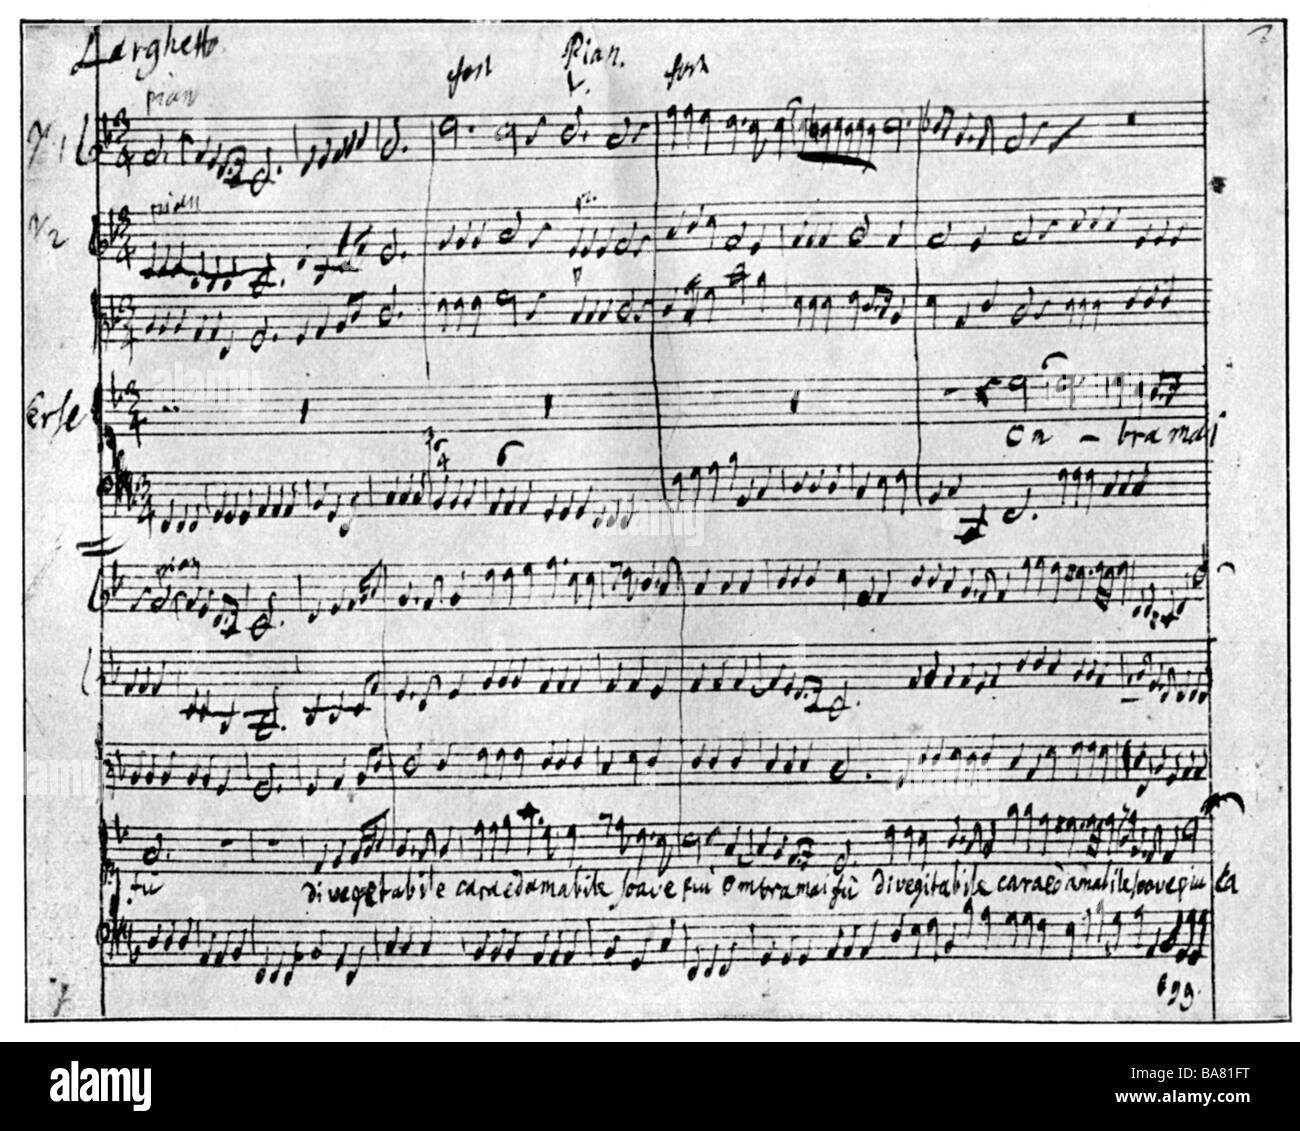 Handel, George Frederic, 23.2.1685 - 14.4.1759, compositeur allemand, œuvres, opéra 'se' (1738), largo, partitions de musique, , Banque D'Images